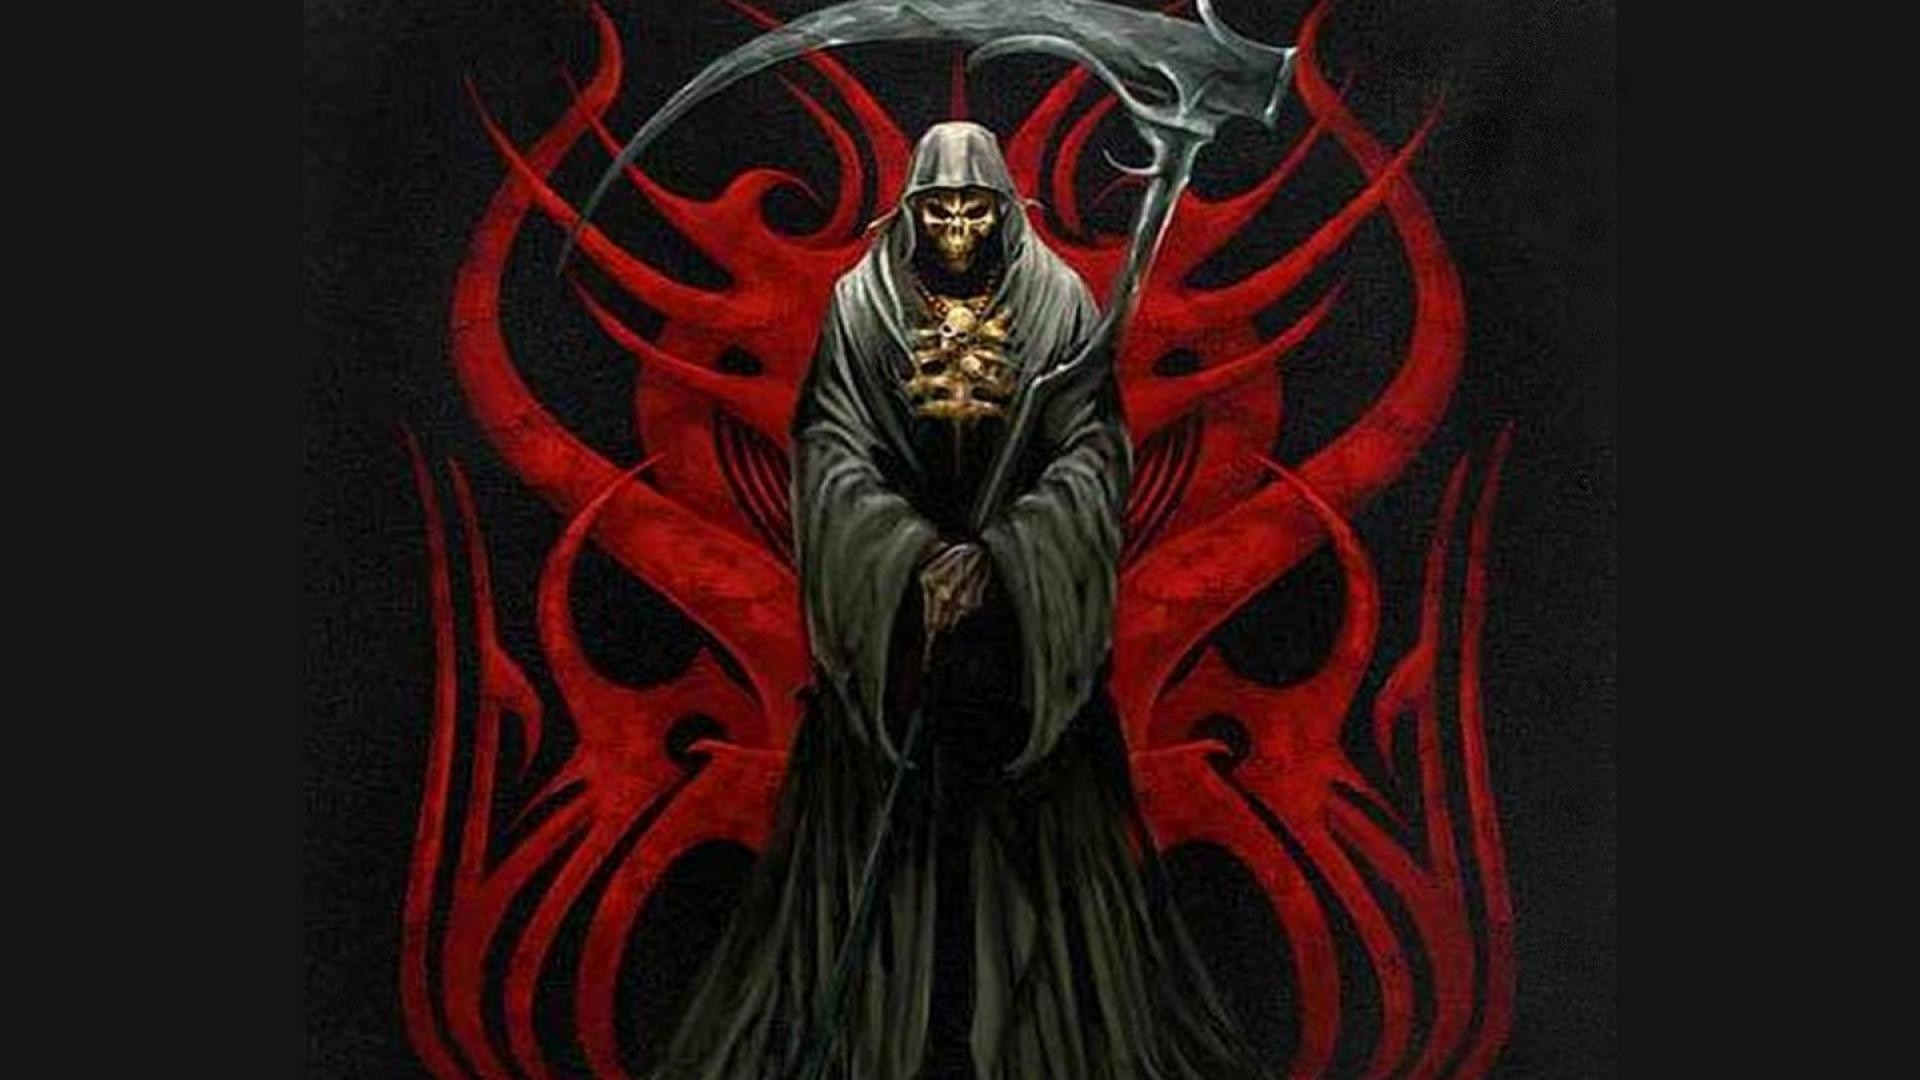 1920x1080 Grim Reaper HD Wallpapers - WallpaperSafari ...